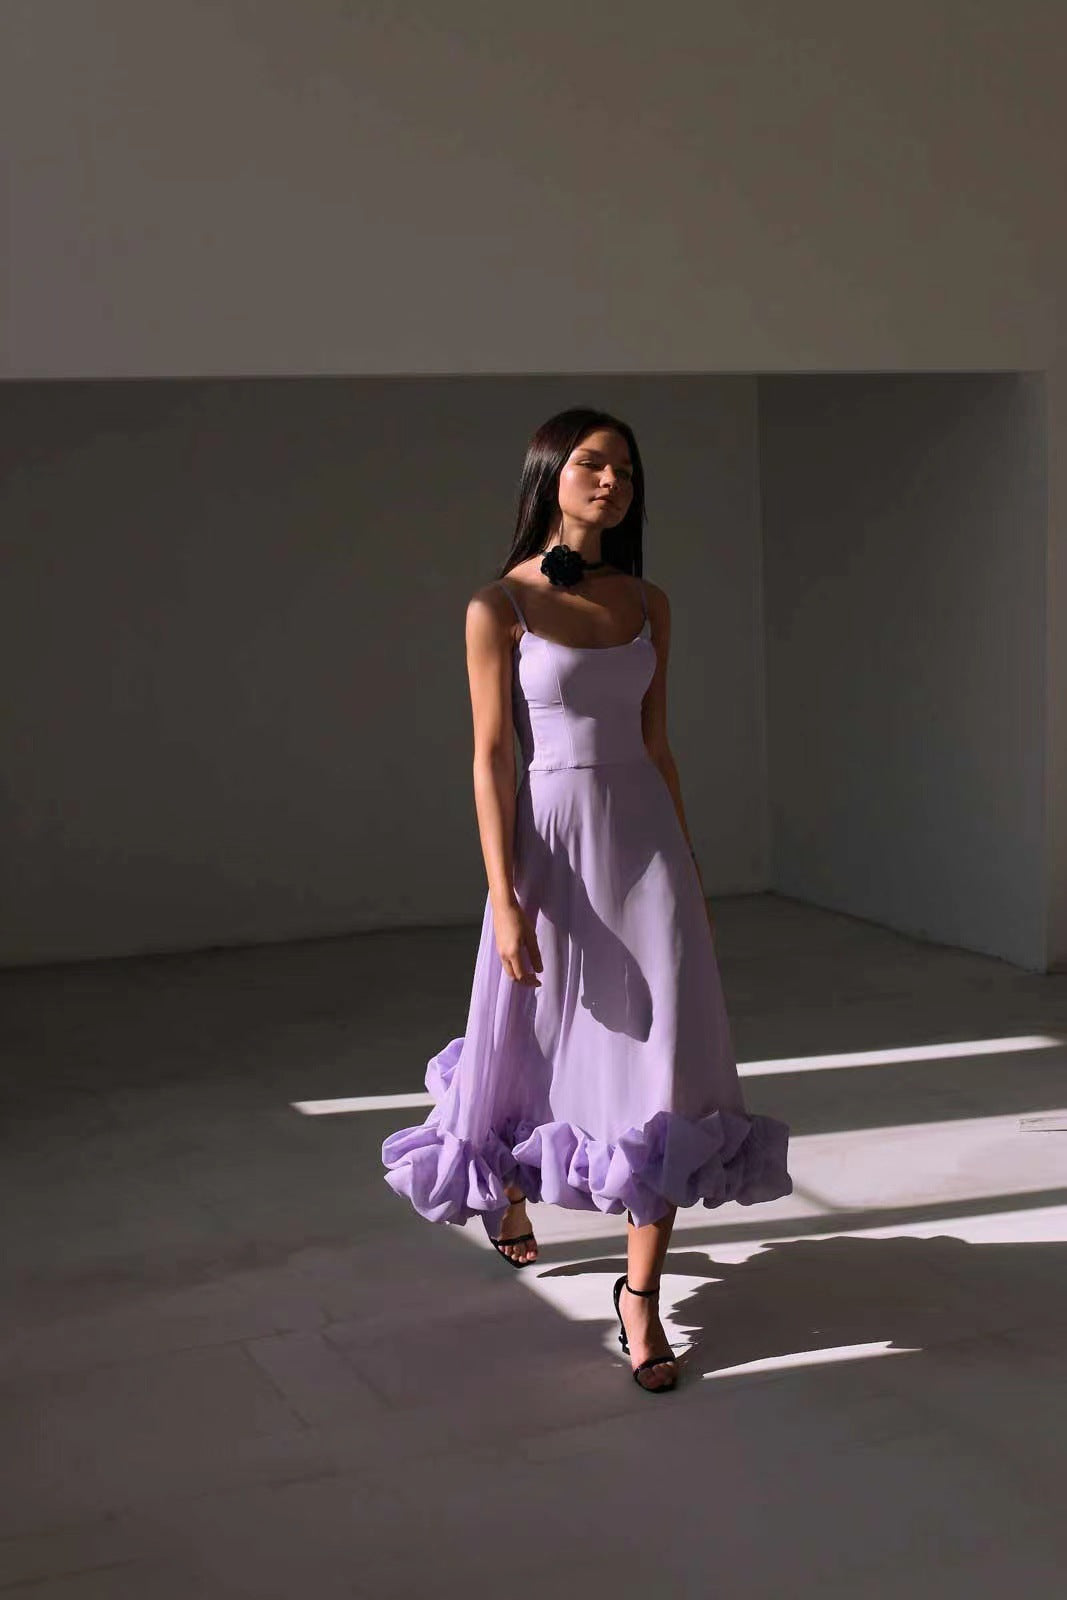 Μίντι φόρεμα για πάρτι με βολάν 3D